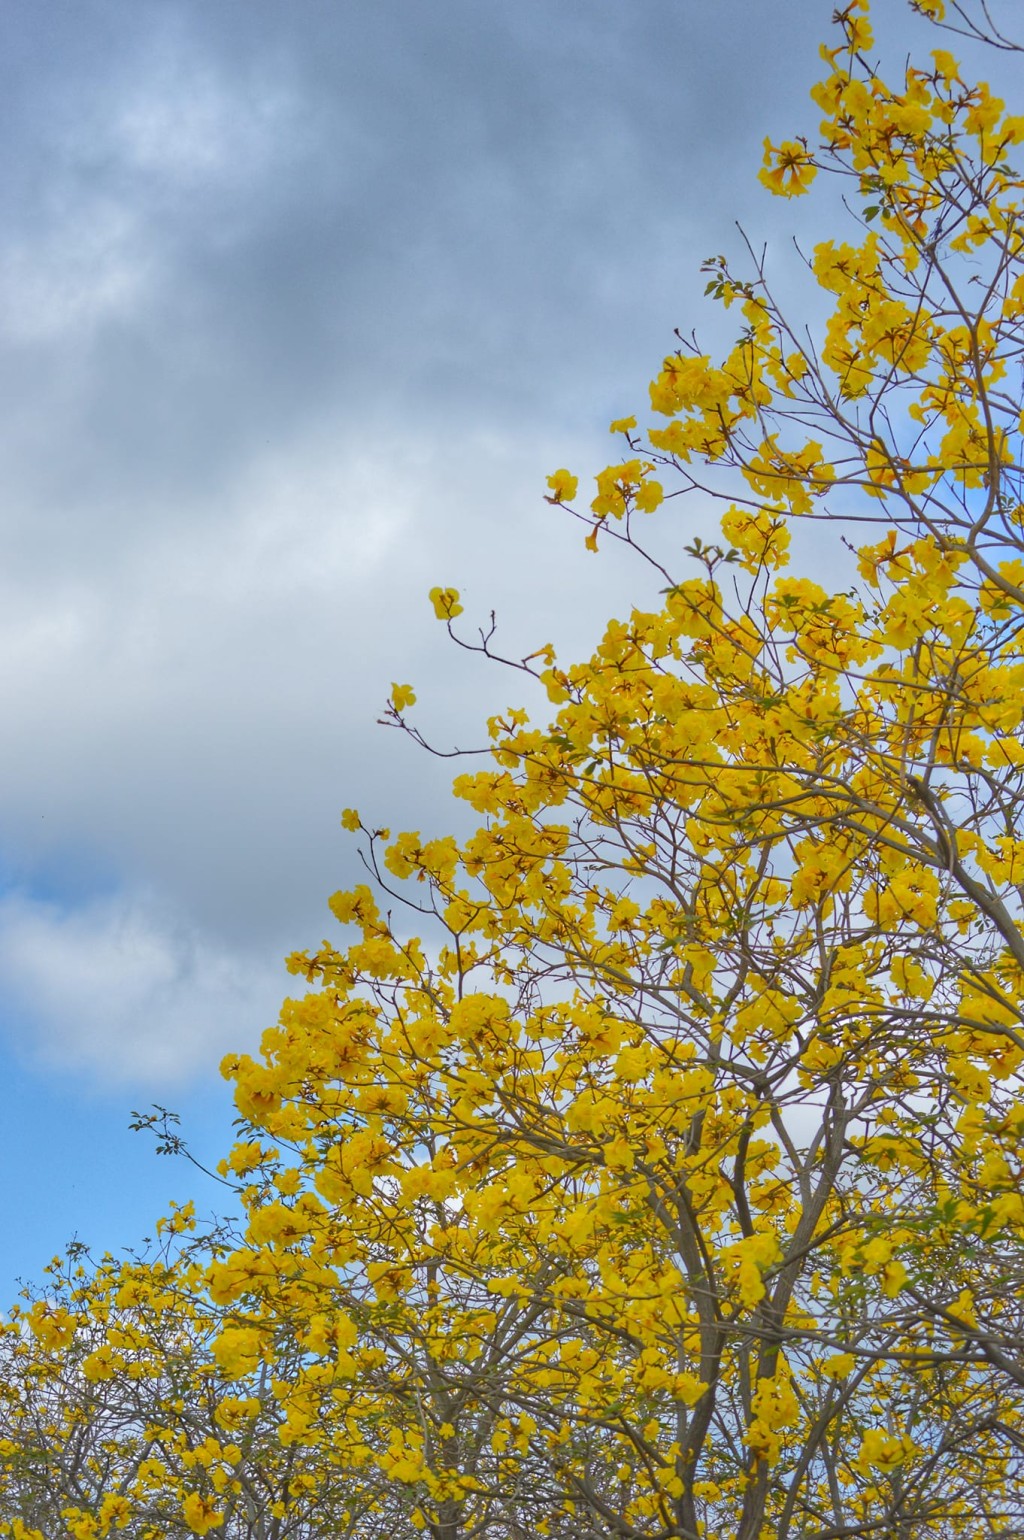 黃花風鈴木的花朵花緣呈現皺摺狀，似足風鈴形狀，因而得名。花期通常為每年的2至3月，花期短暫，想去賞花的大家要把握時間！（圖片來源：FB @ Helen Li 提供）